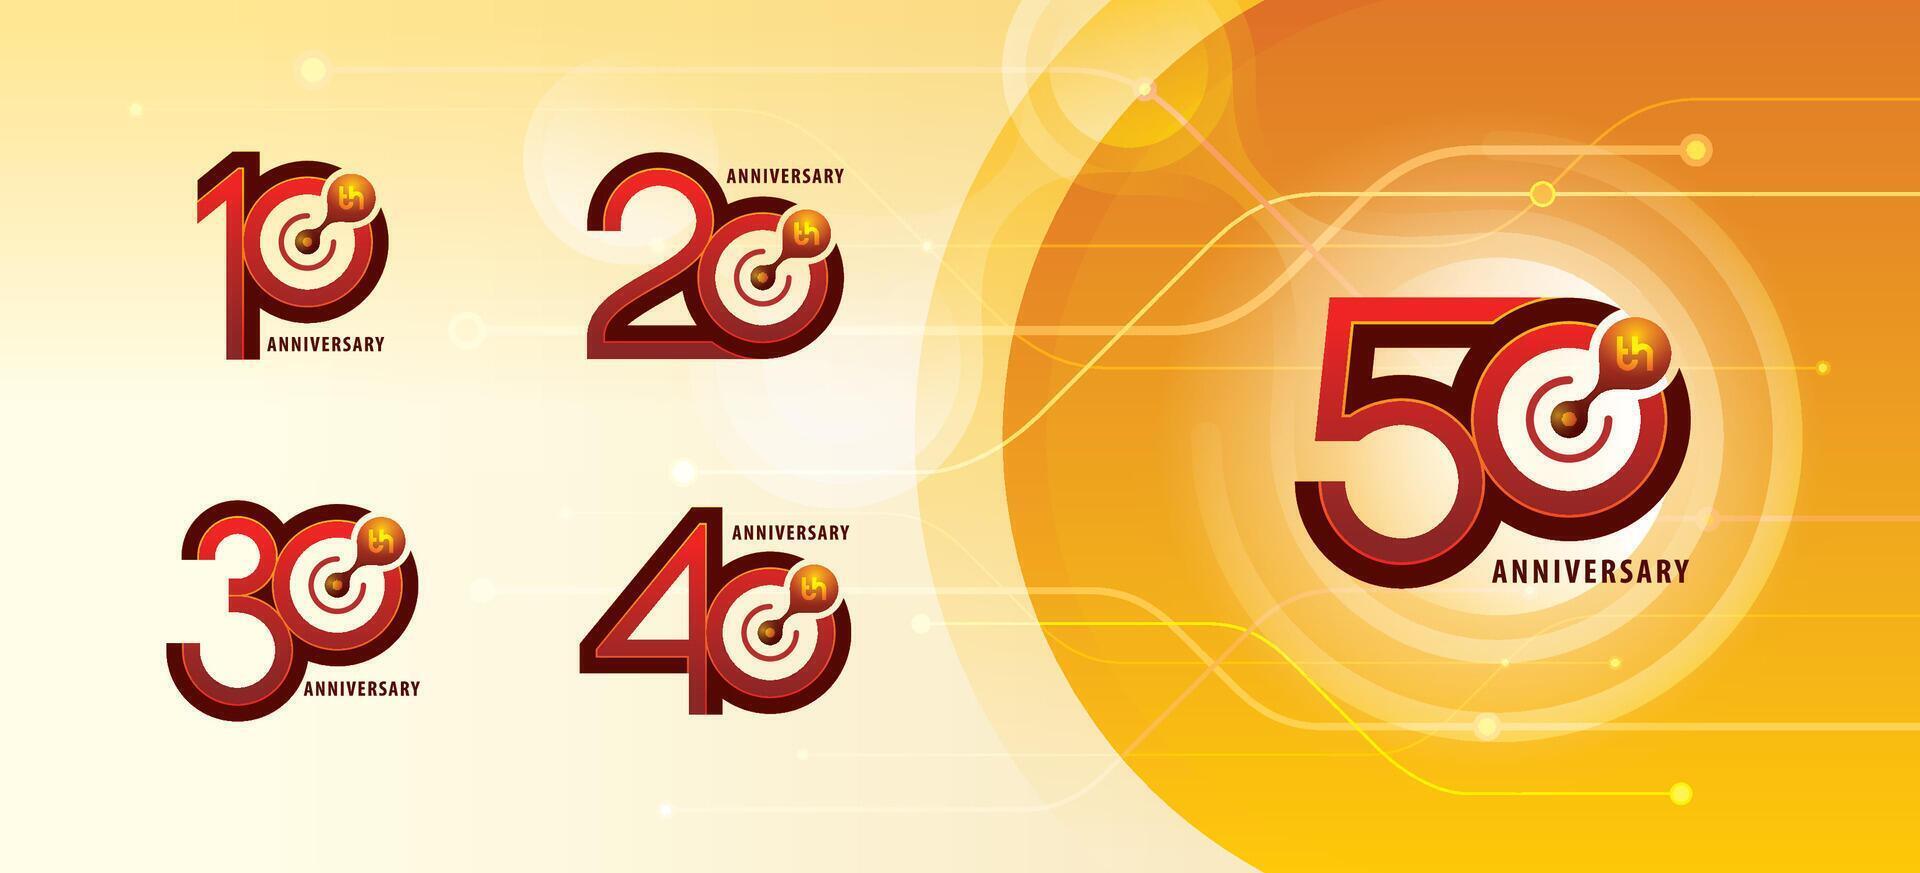 einstellen von 10 zu 50 Jahre Jahrestag Logo Design, zehn zu fünfzig Jahre feiern Jahrestag Logo mehrere Linie zum Feier vektor